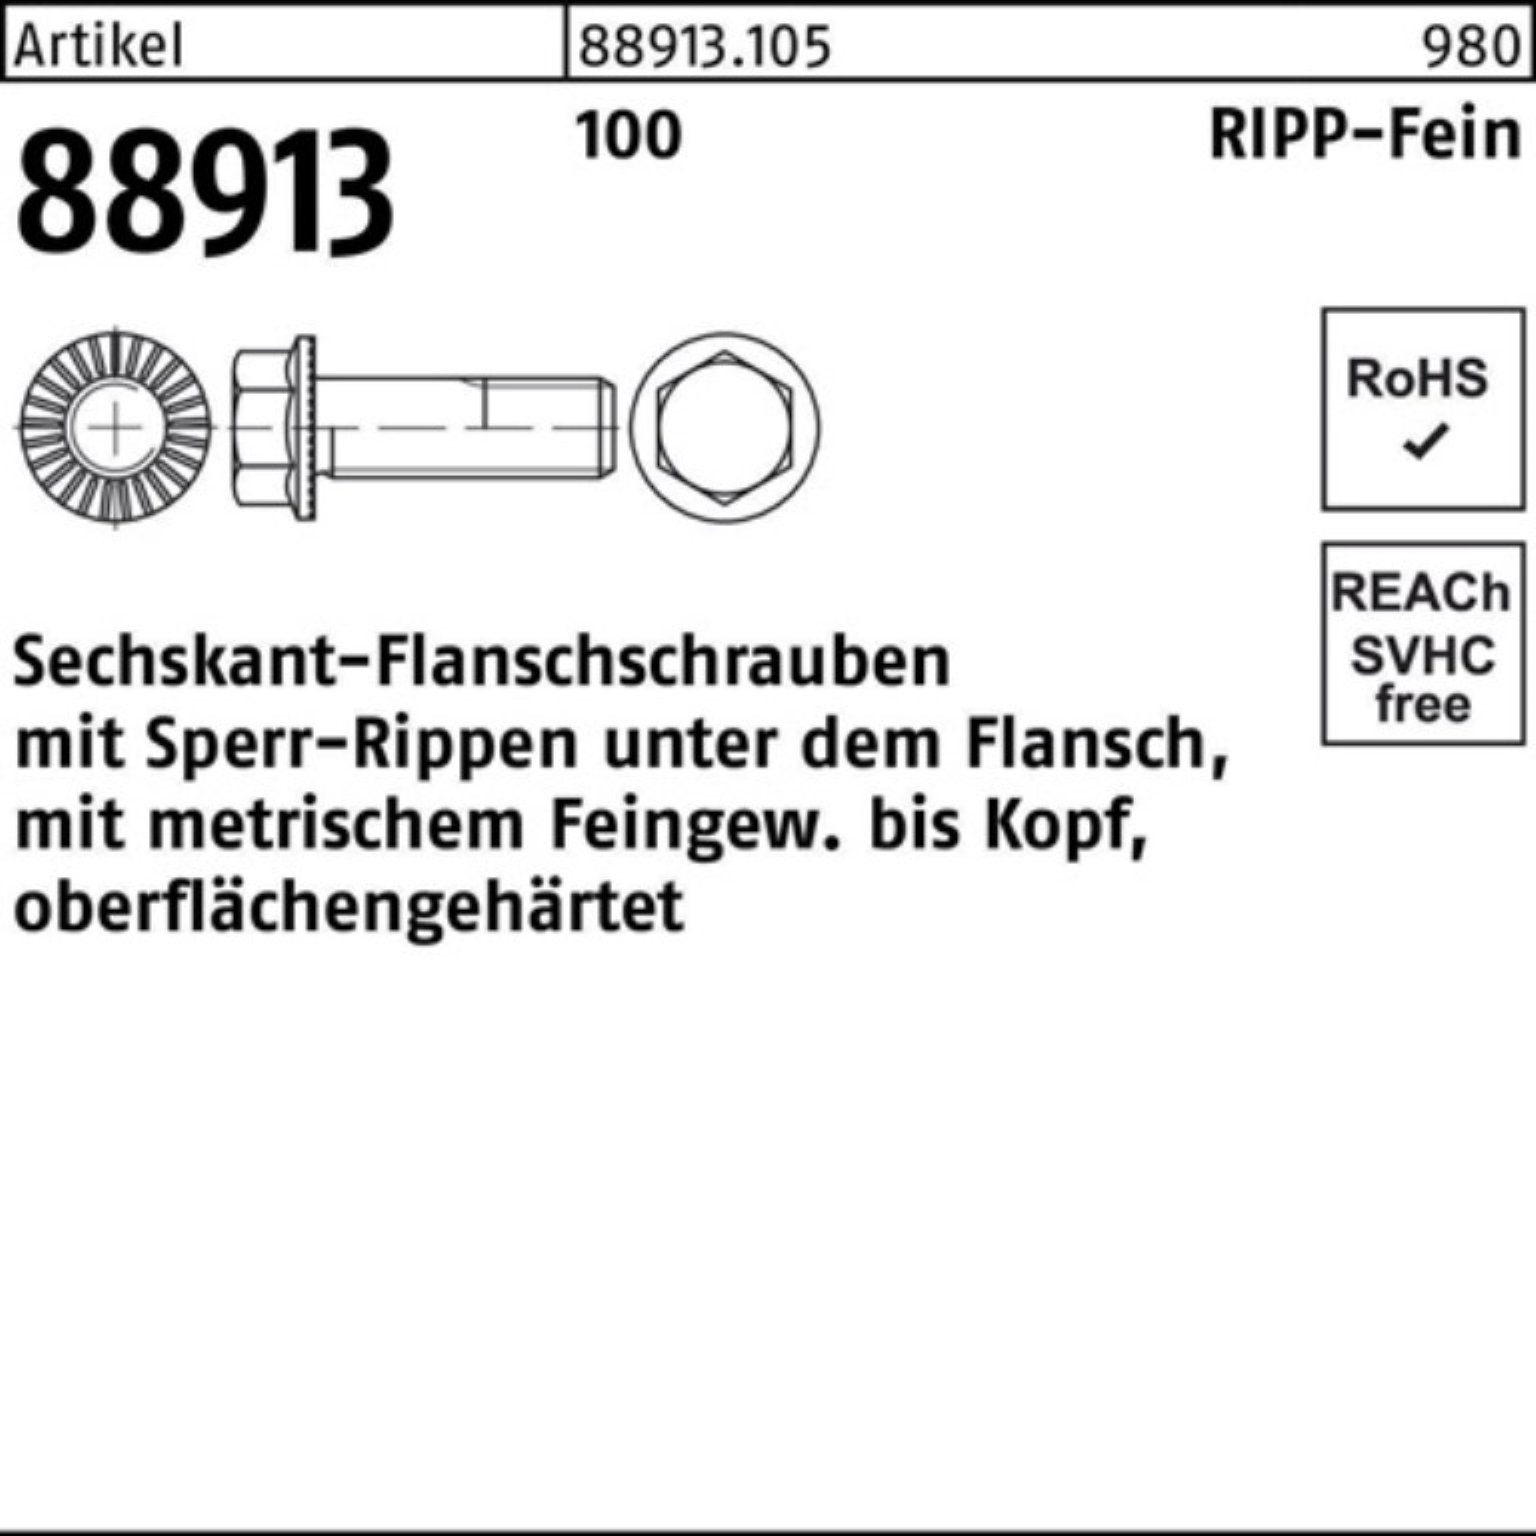 M14x 55 R Reyher VG Sperr-Ripp Sechskantflanschschraube 100er 88913 Pack 1,5x Schraube